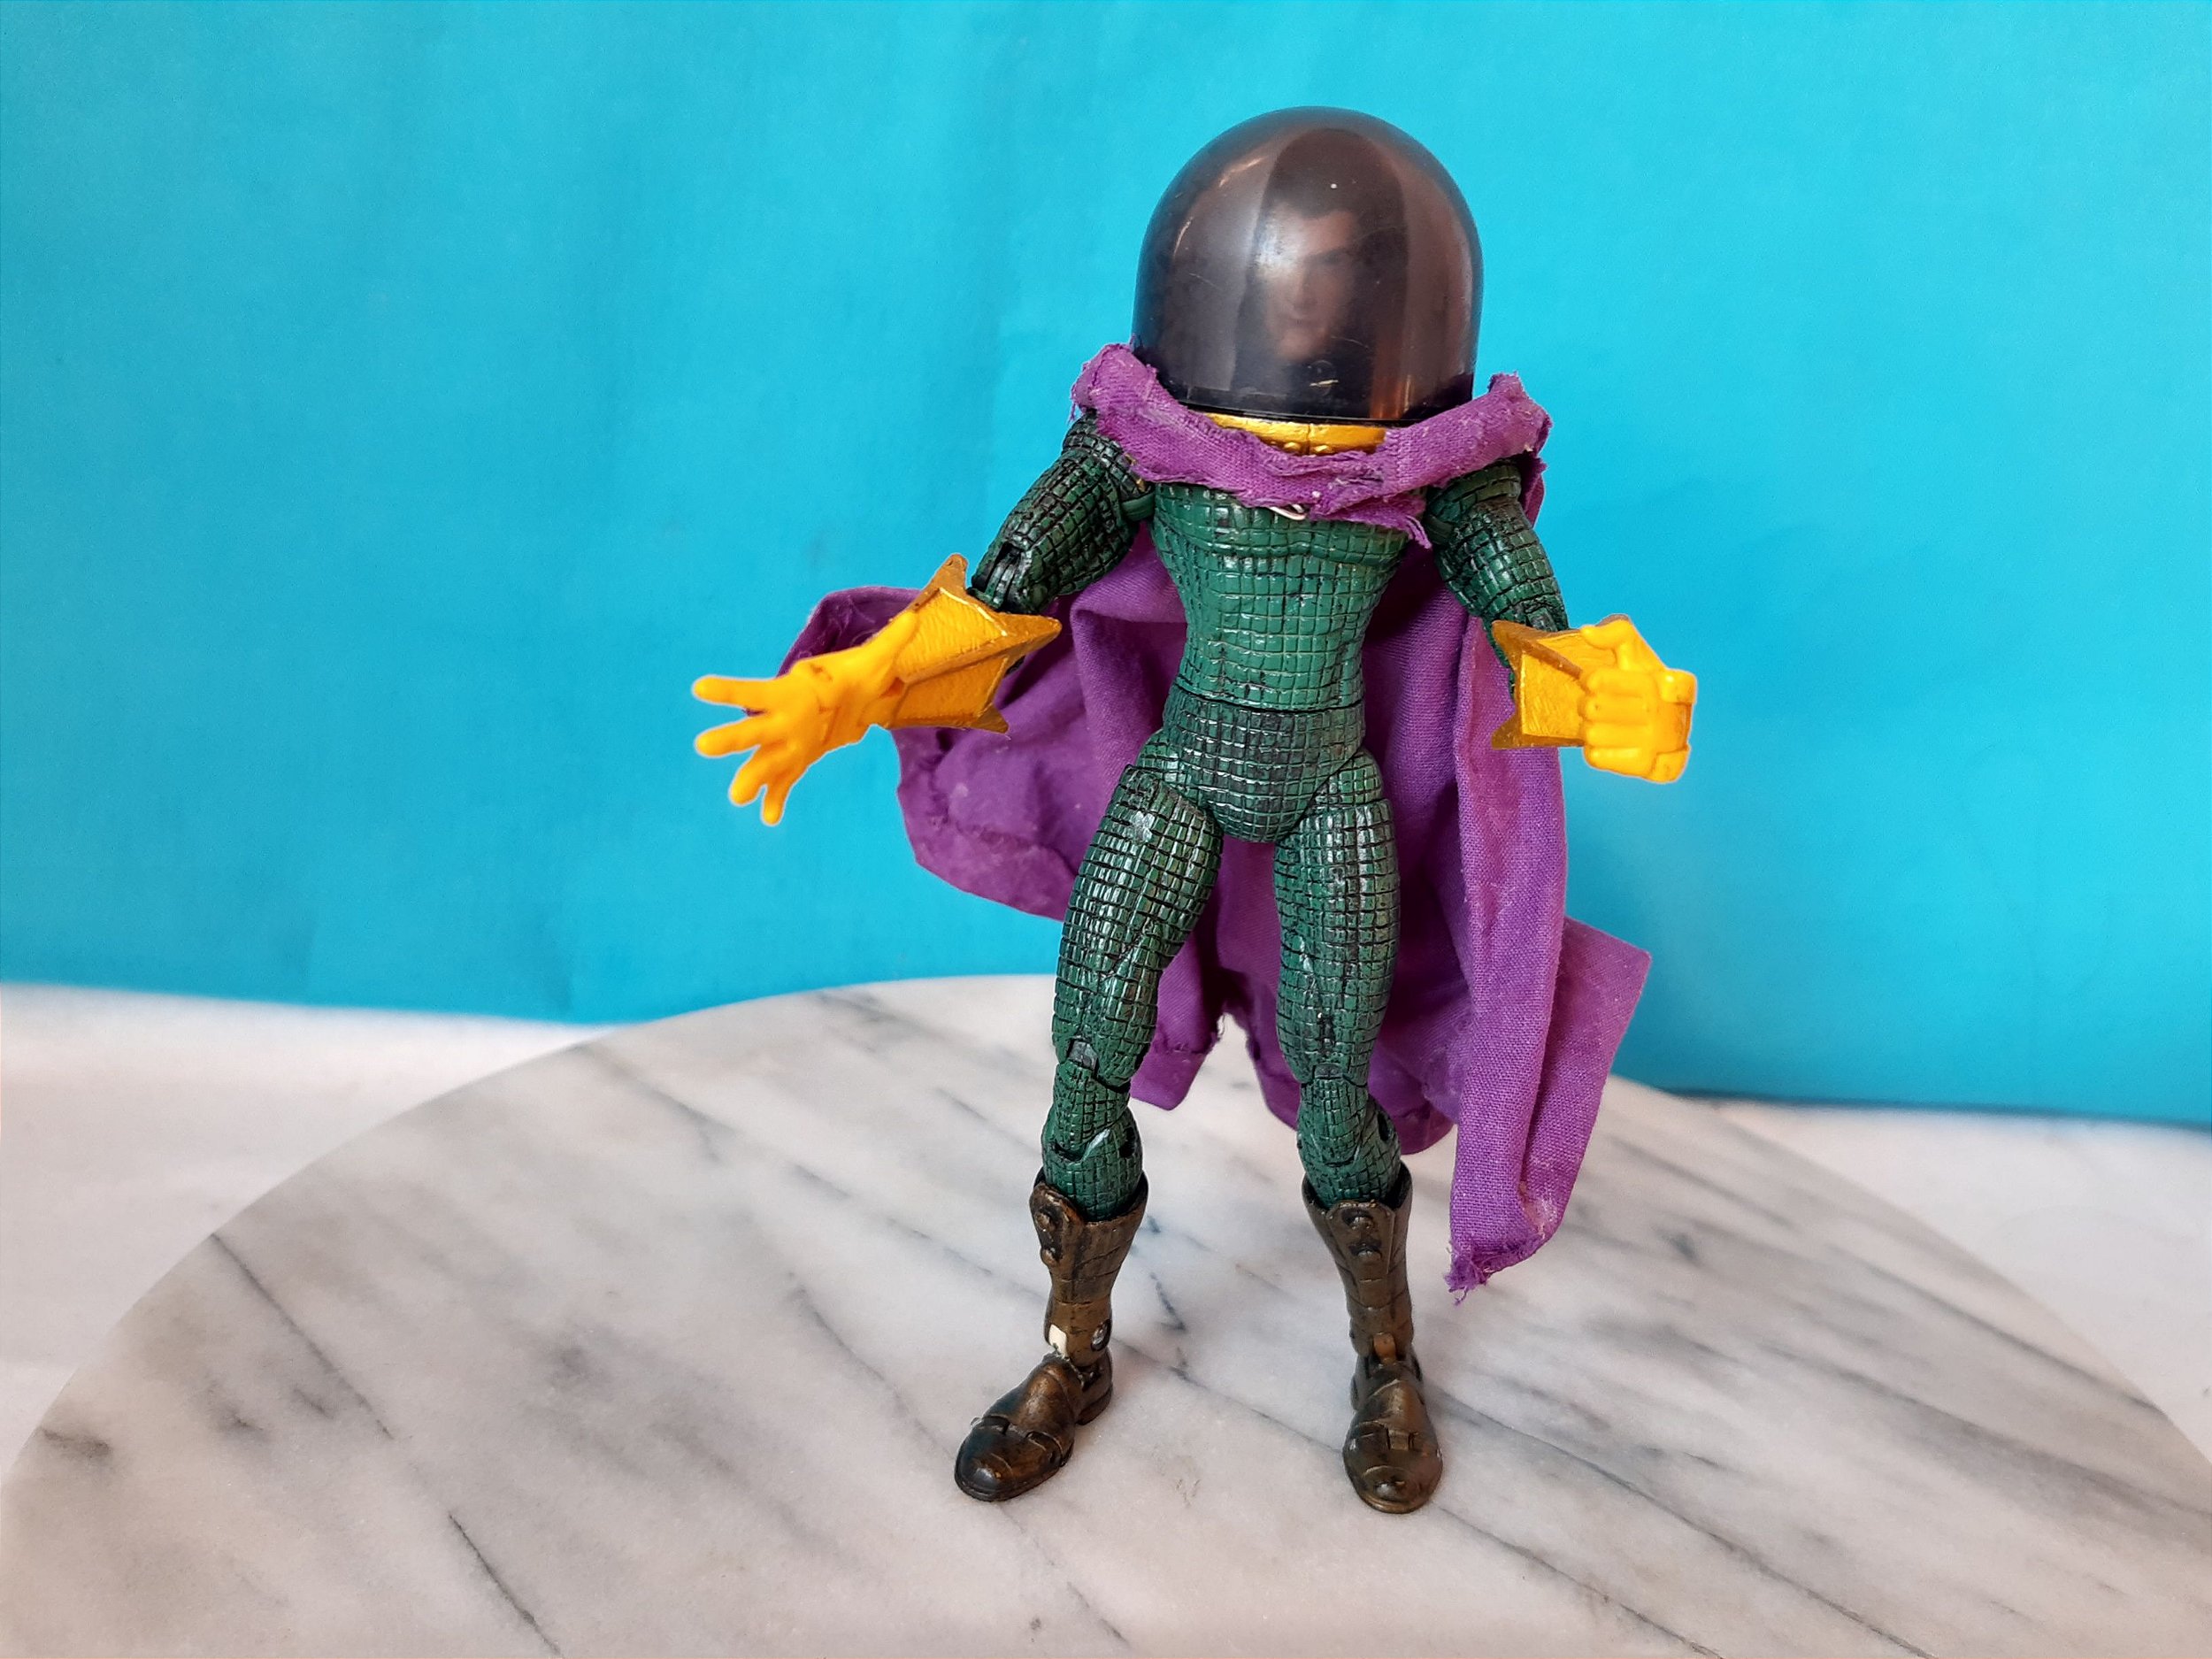 Homem Aranha Action Figure, Miniaturas colecionáveis